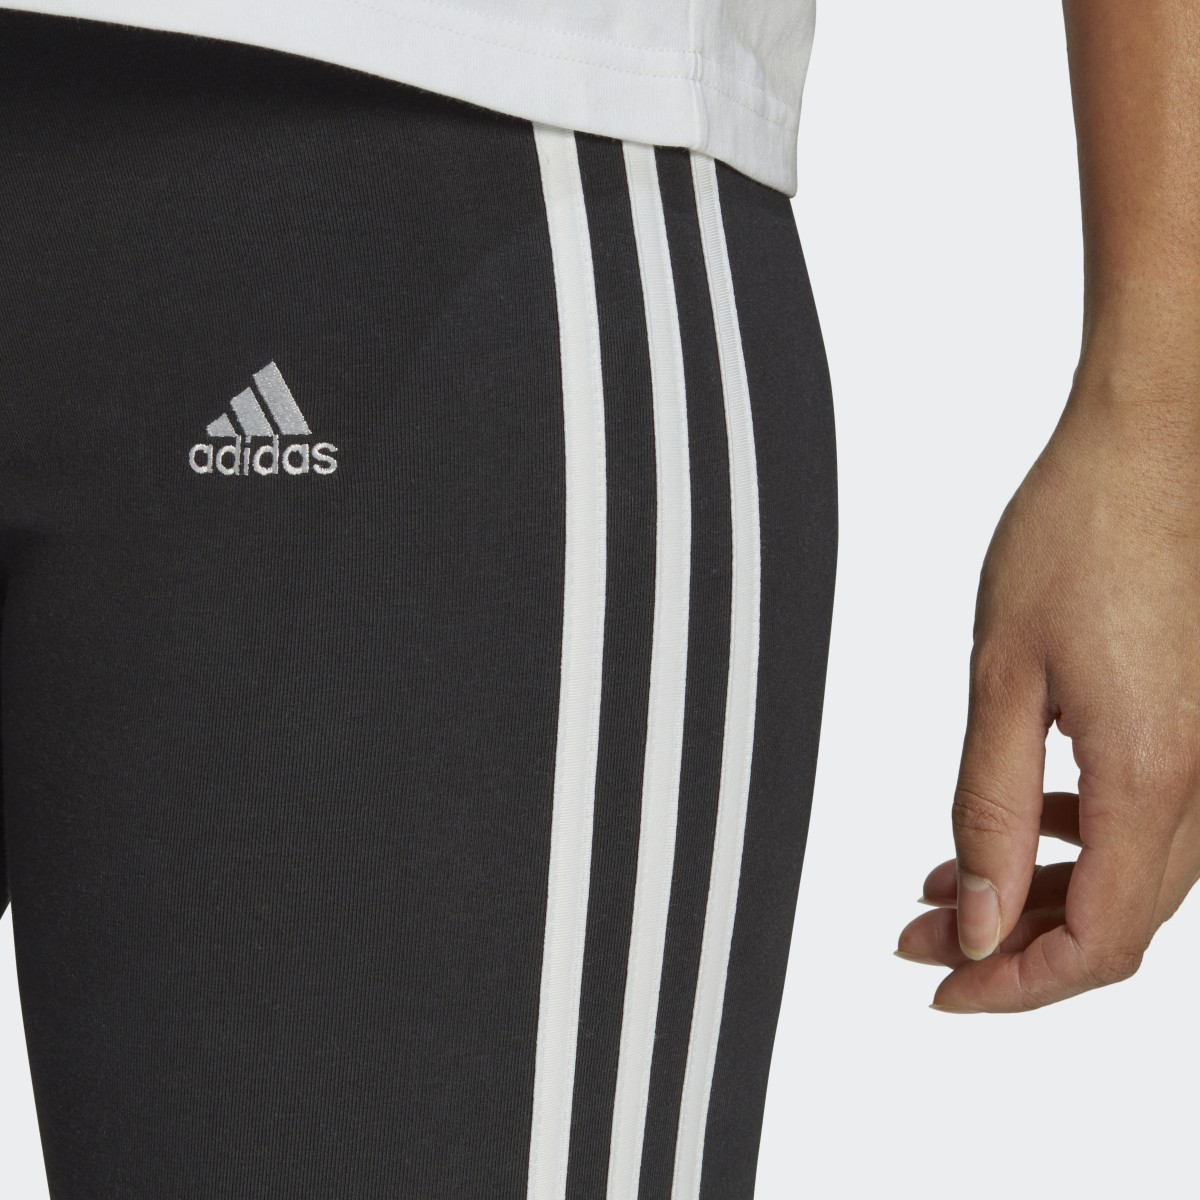 Adidas Essentials 3-Stripes Colorblock Cotton Leggings. 6